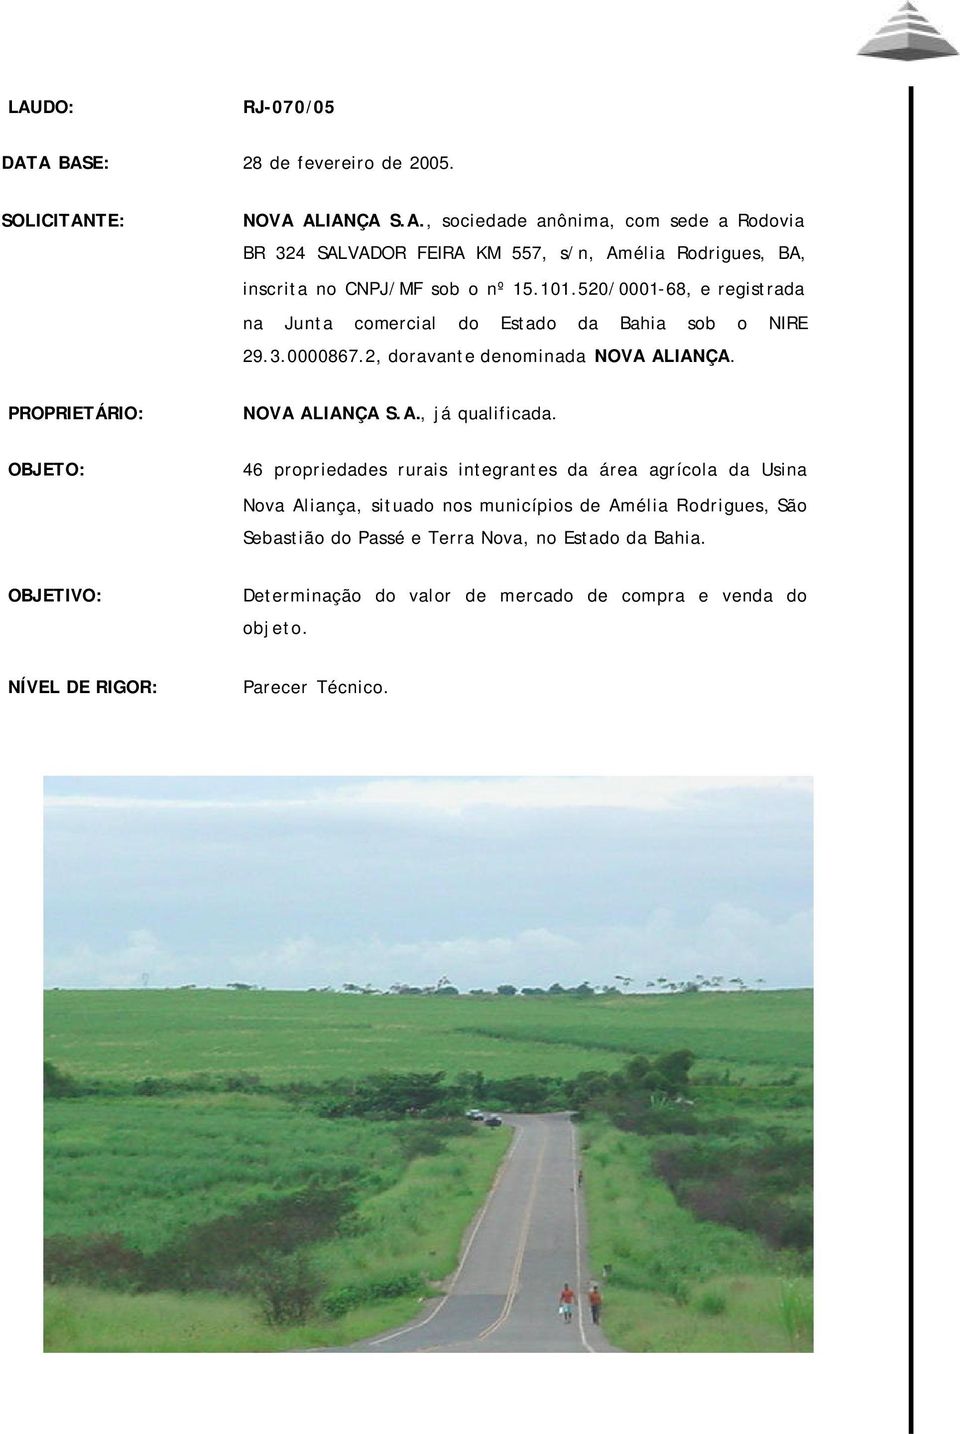 OBJETO: 46 propriedades rurais integrantes da área agrícola da Usina Nova Aliança, situado nos municípios de Amélia Rodrigues, São Sebastião do Passé e Terra Nova, no